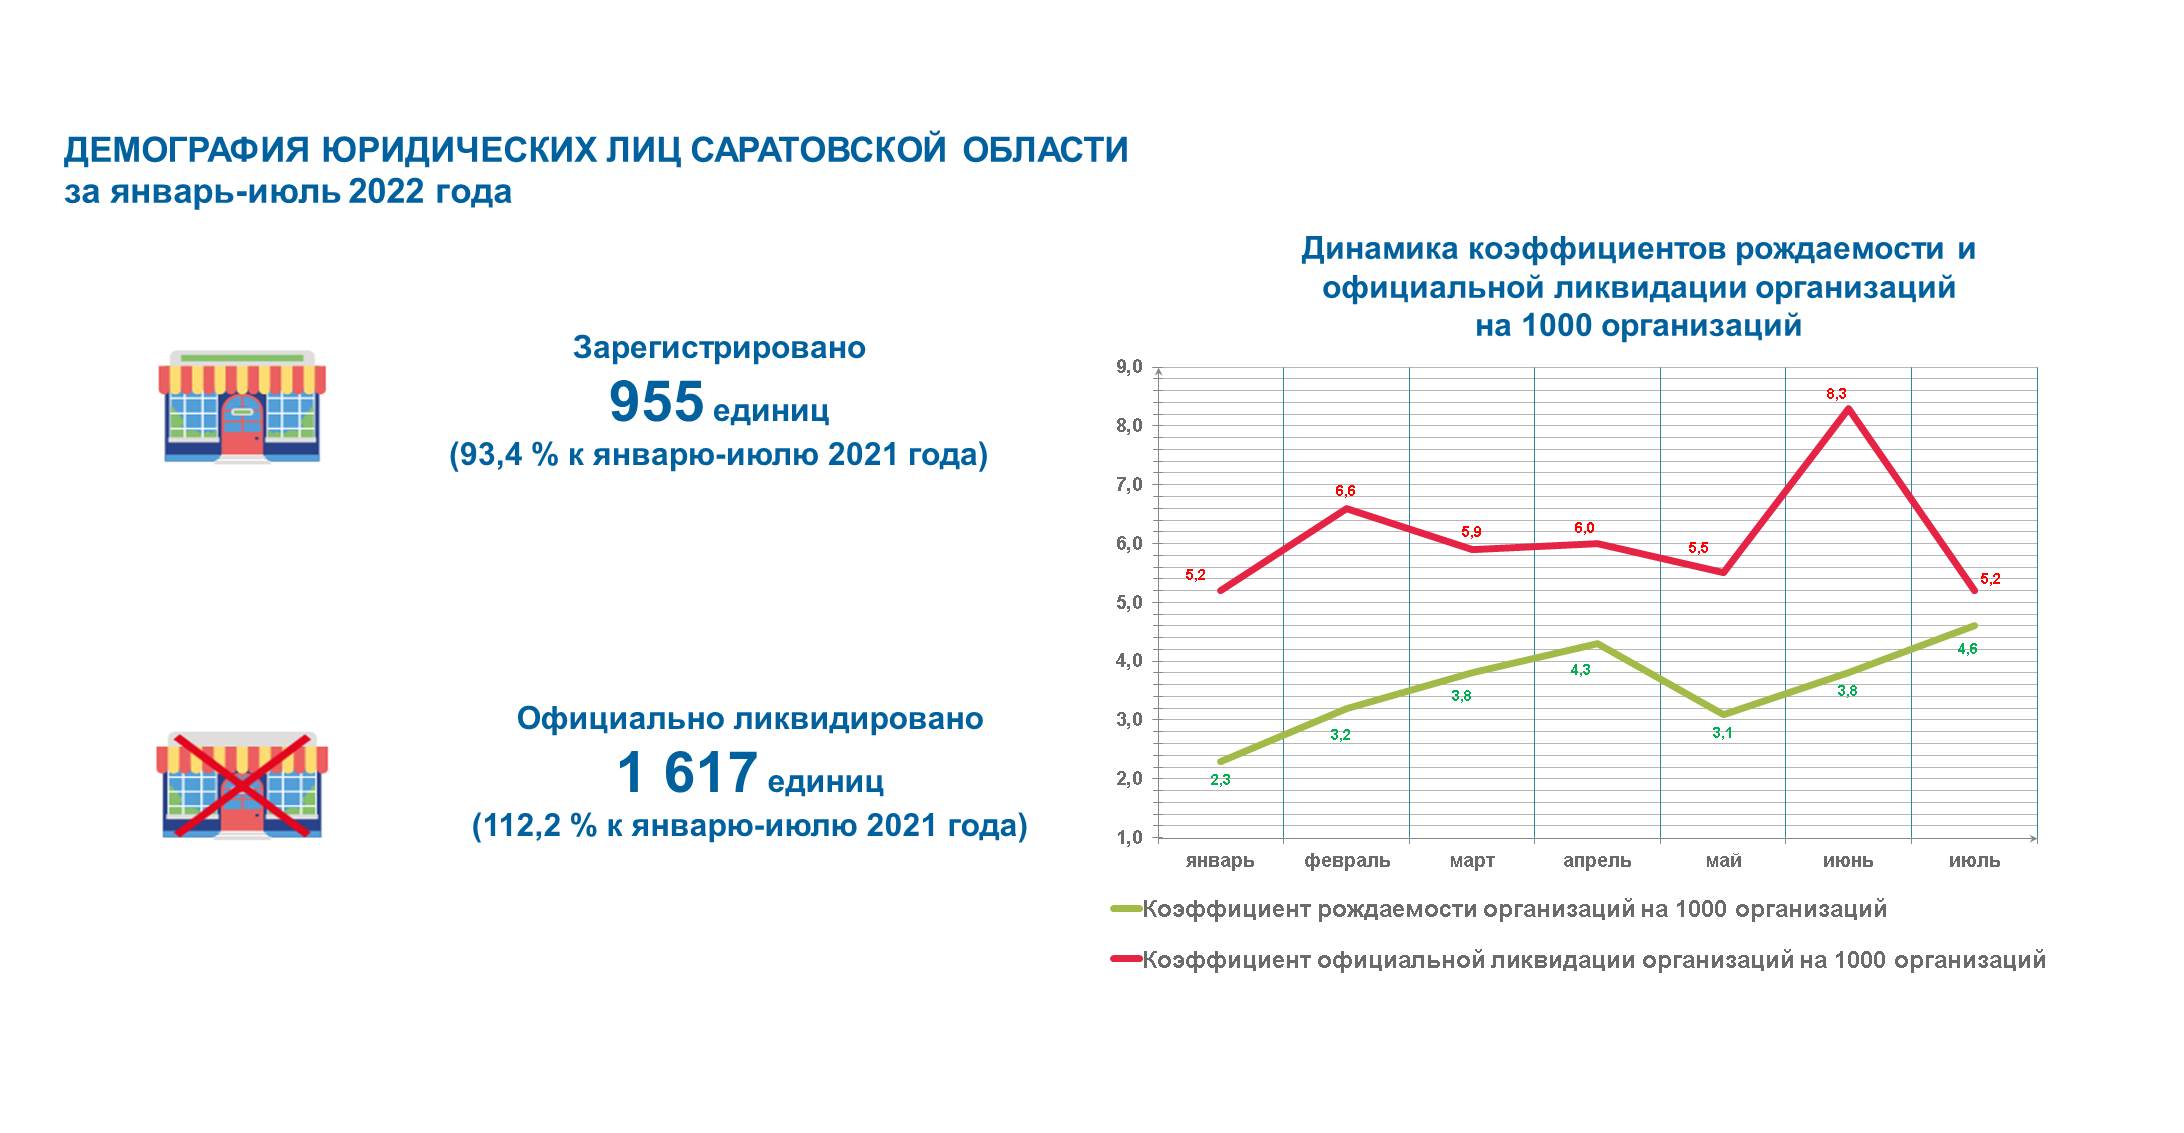 Демография юридических лиц Саратовской области за январь-июль 2022 года